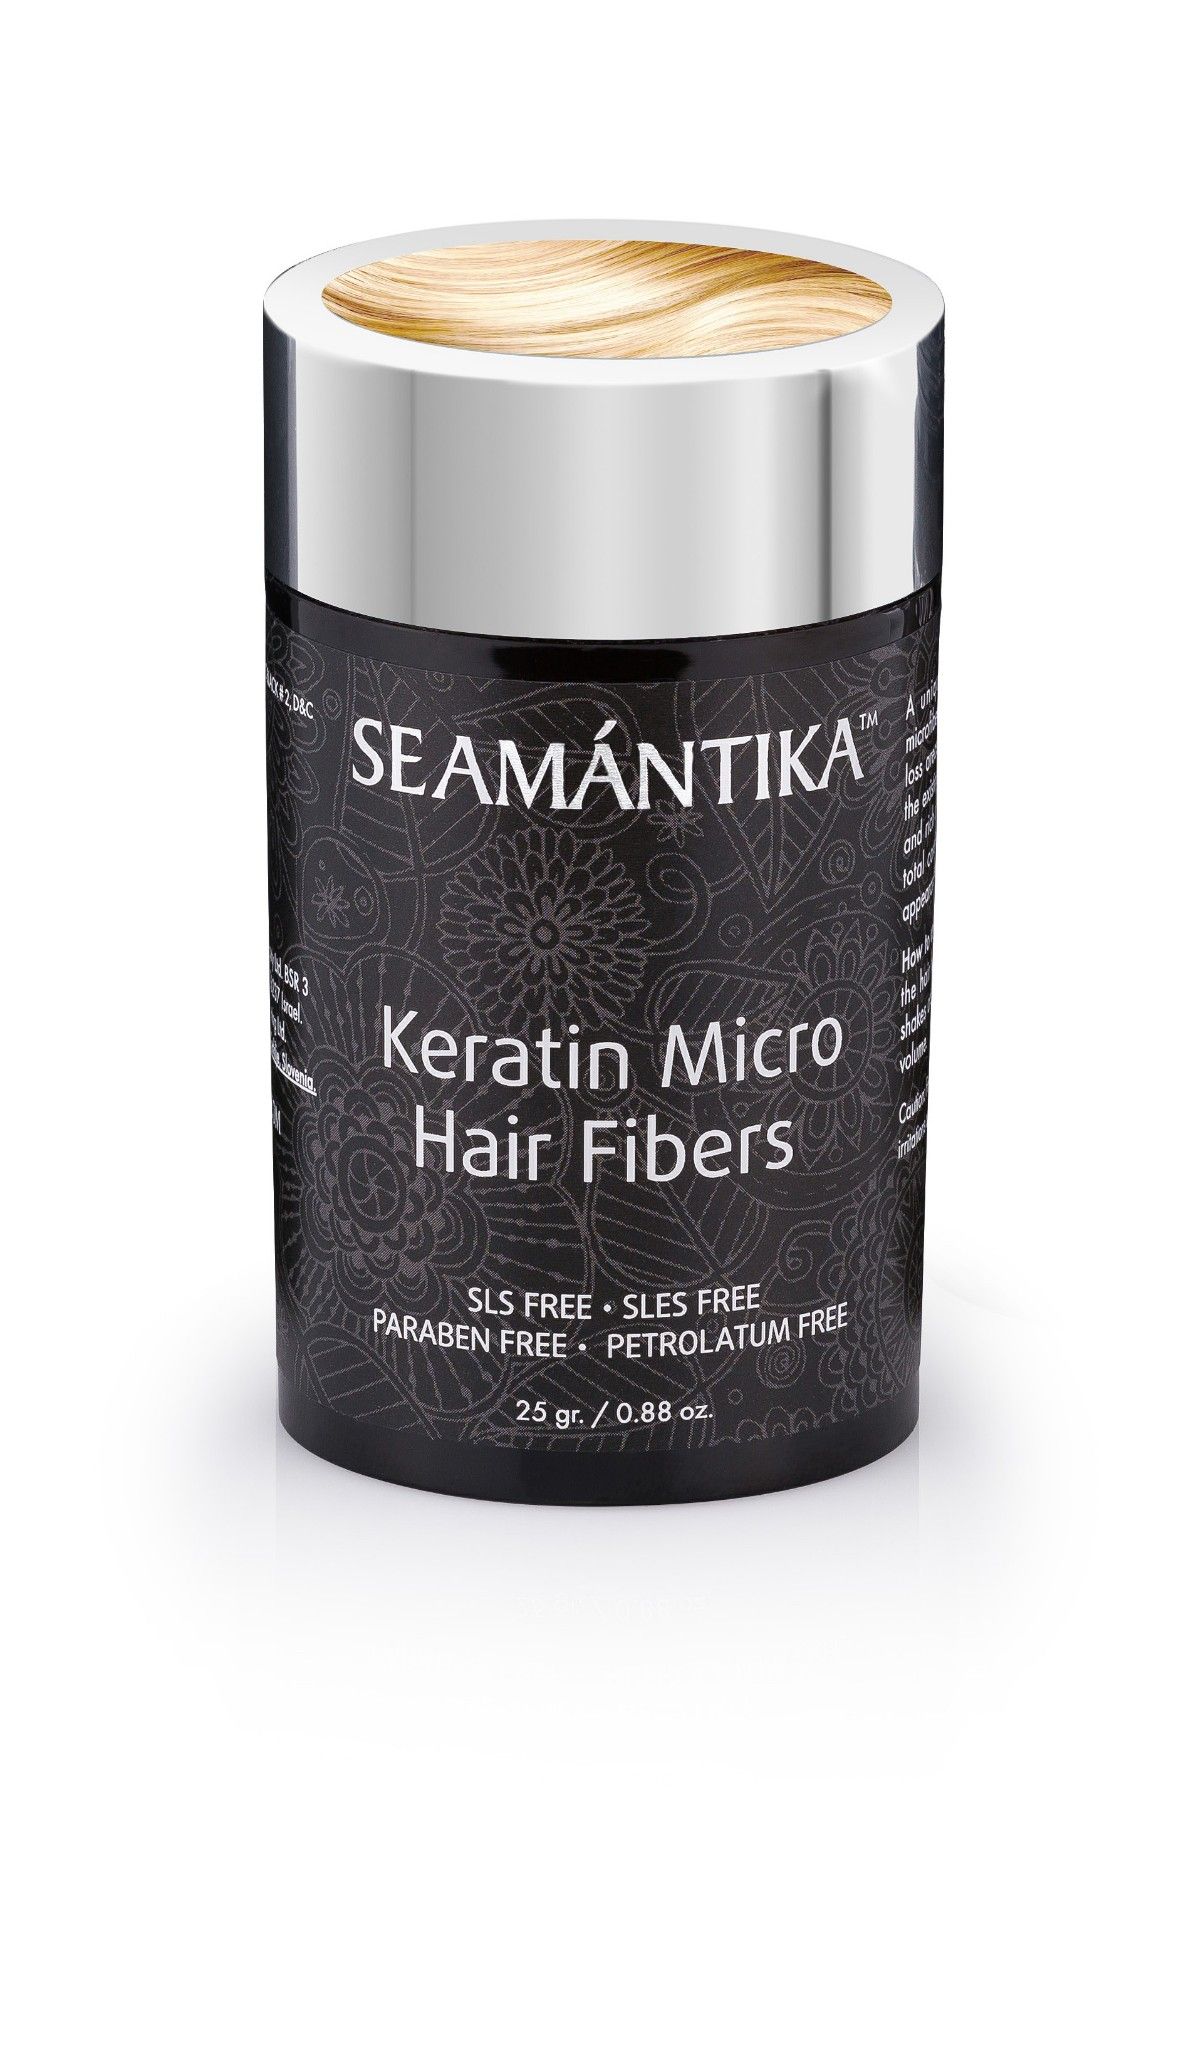  Sợi Keratin Siêu Nhỏ - Tóc Vàng - Dành cho mái tóc mỏng - KERATIN MICRO HAIR FIBERS - BLONDE 